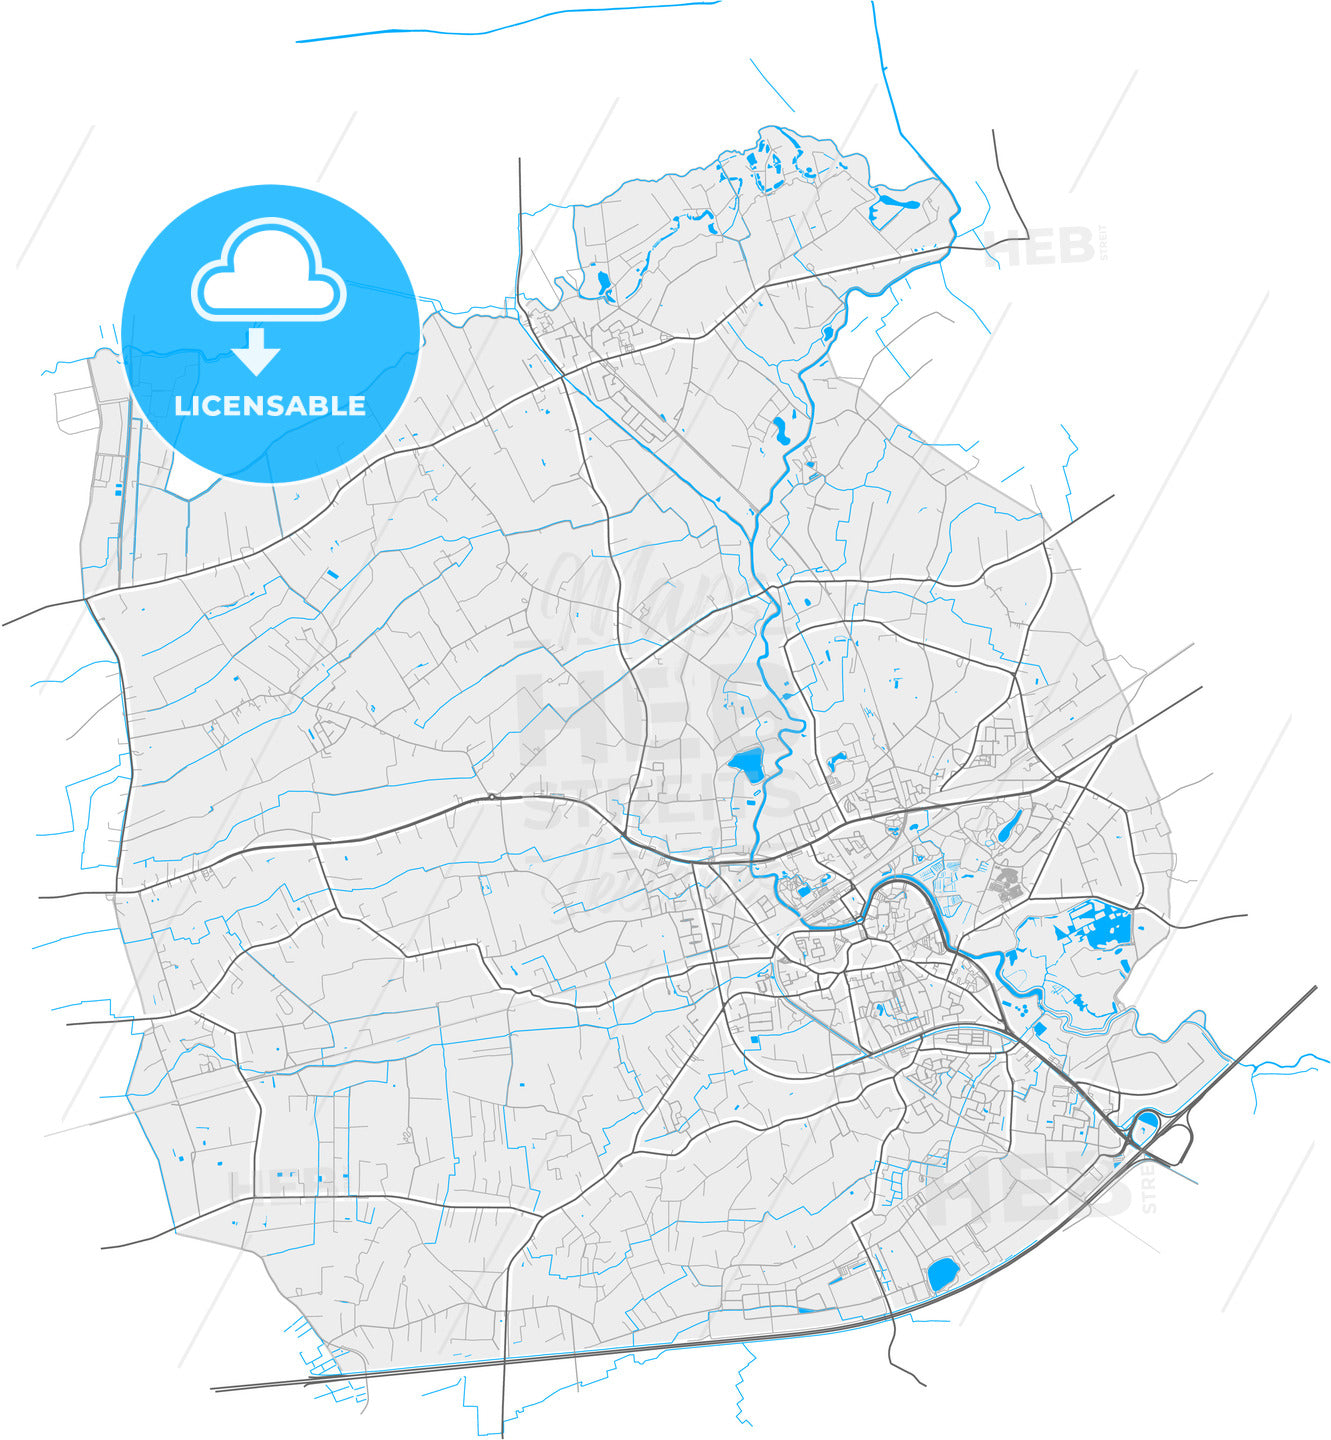 Lokeren, East Flanders, Belgium, high quality vector map